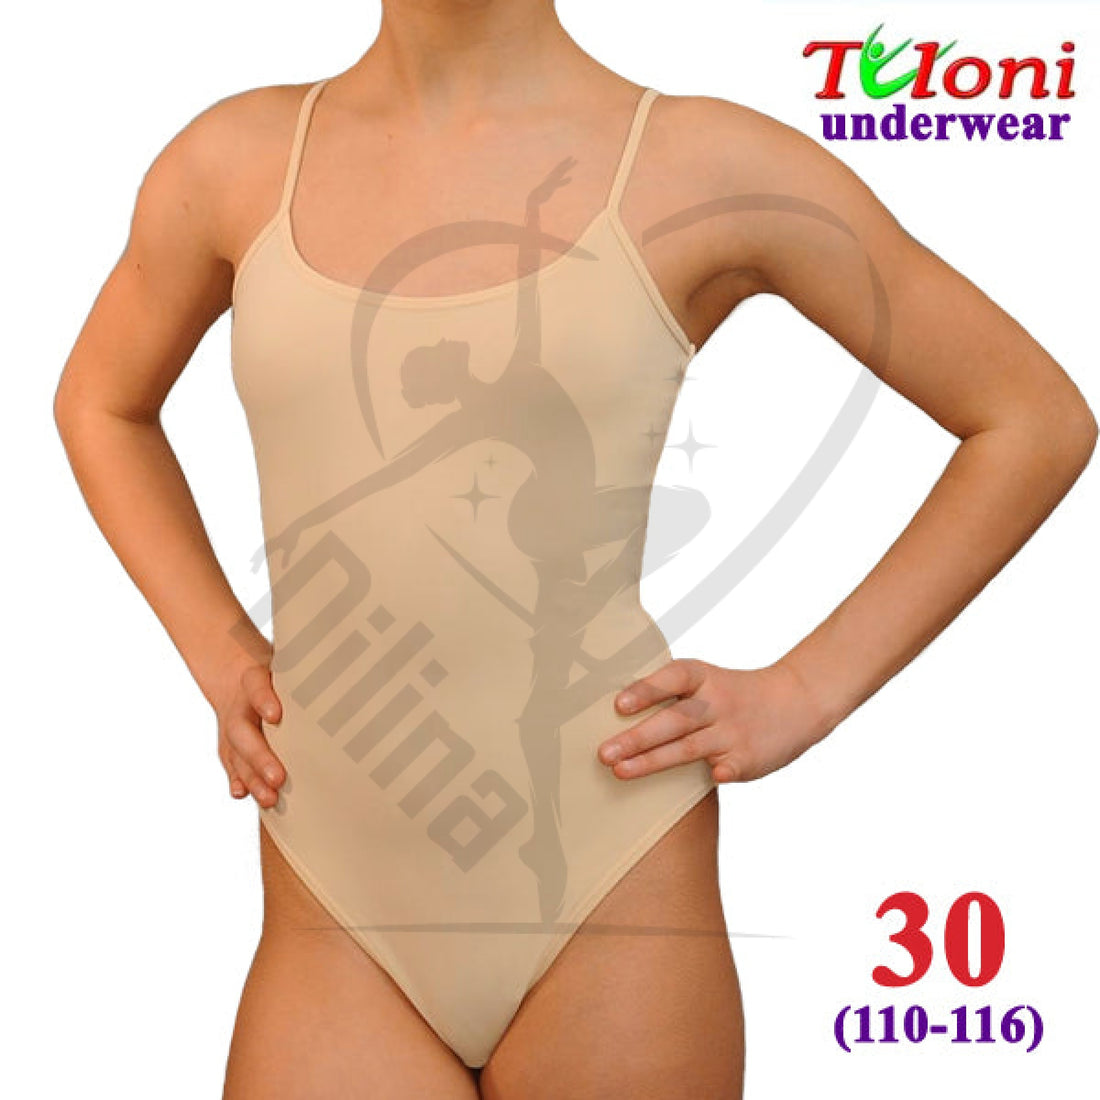 Tuloni Under Leotard 30 (110-116) Underwear